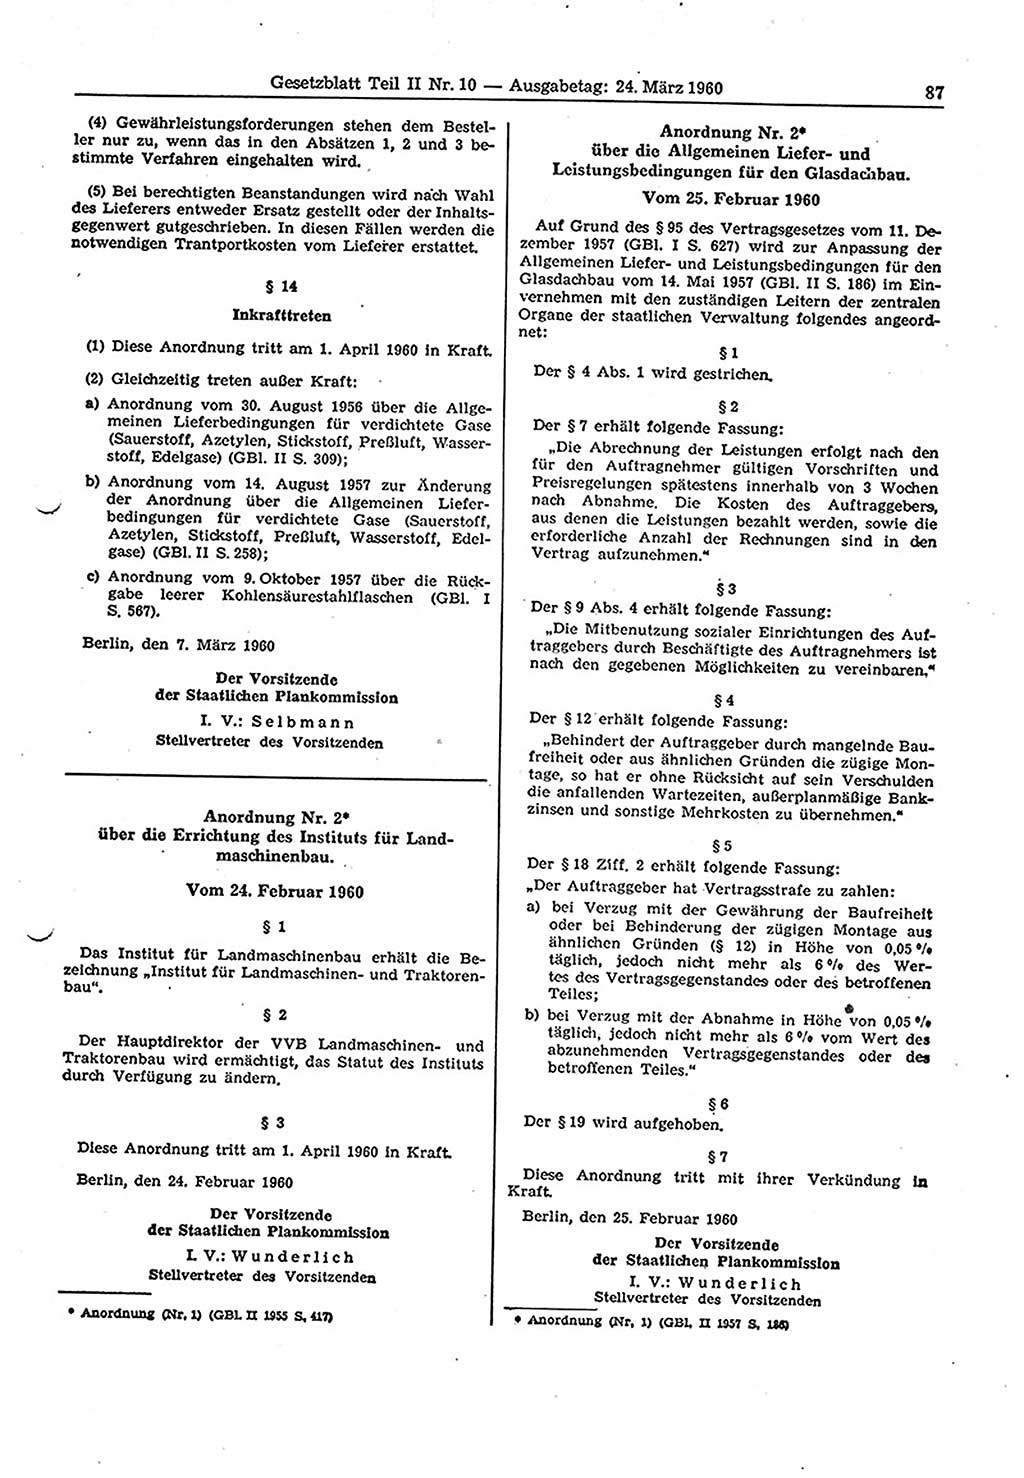 Gesetzblatt (GBl.) der Deutschen Demokratischen Republik (DDR) Teil ⅠⅠ 1960, Seite 87 (GBl. DDR ⅠⅠ 1960, S. 87)